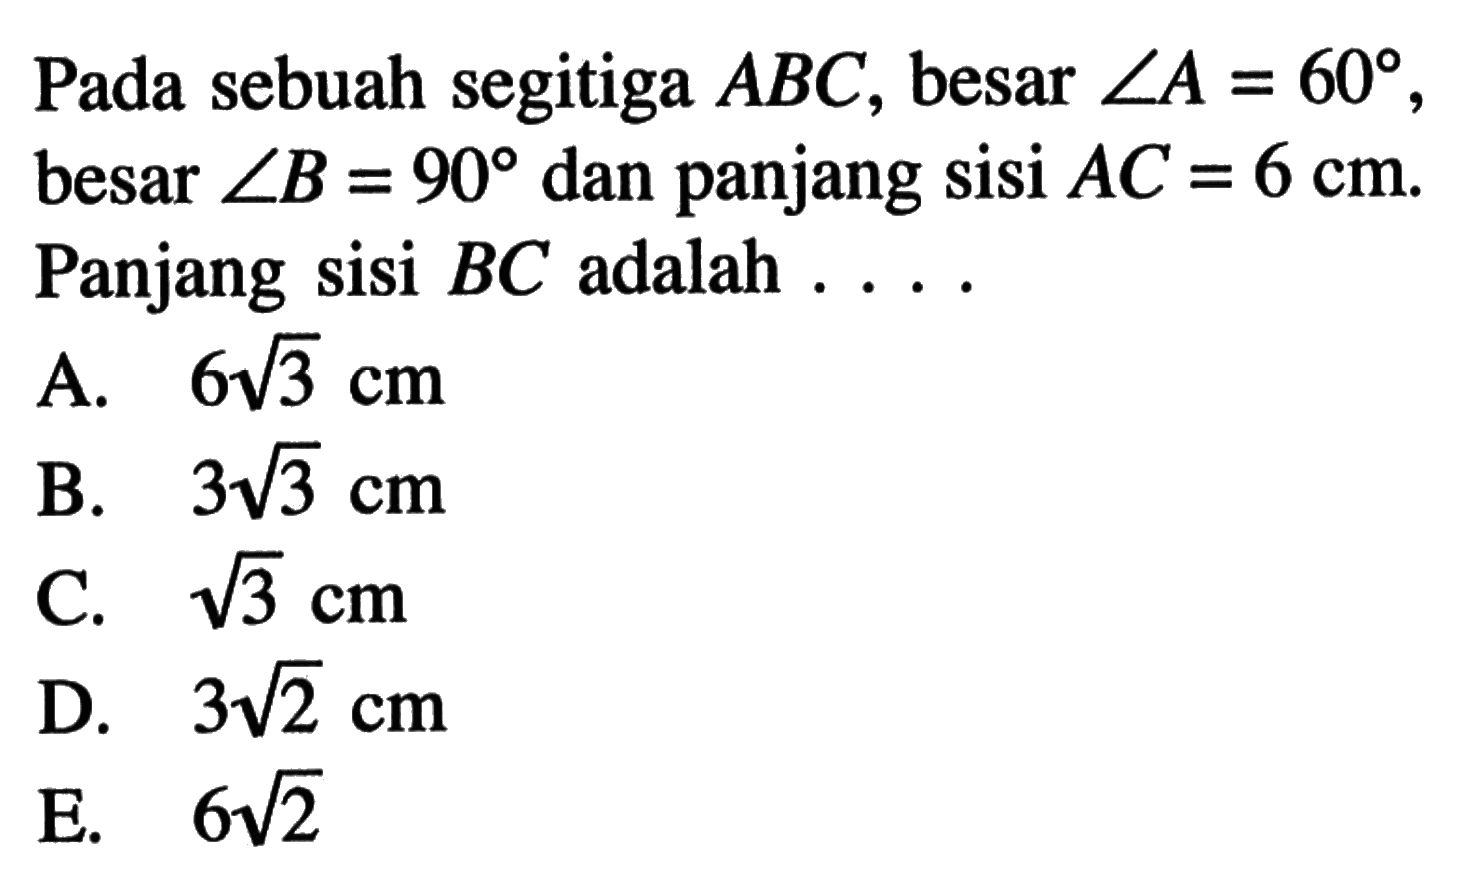 Pada sebuah segitiga  ABC , besar  sudut A=60 , besar  sudut B=90  dan panjang sisi  AC=6 cm . Panjang sisi  BC  adalah  .... 